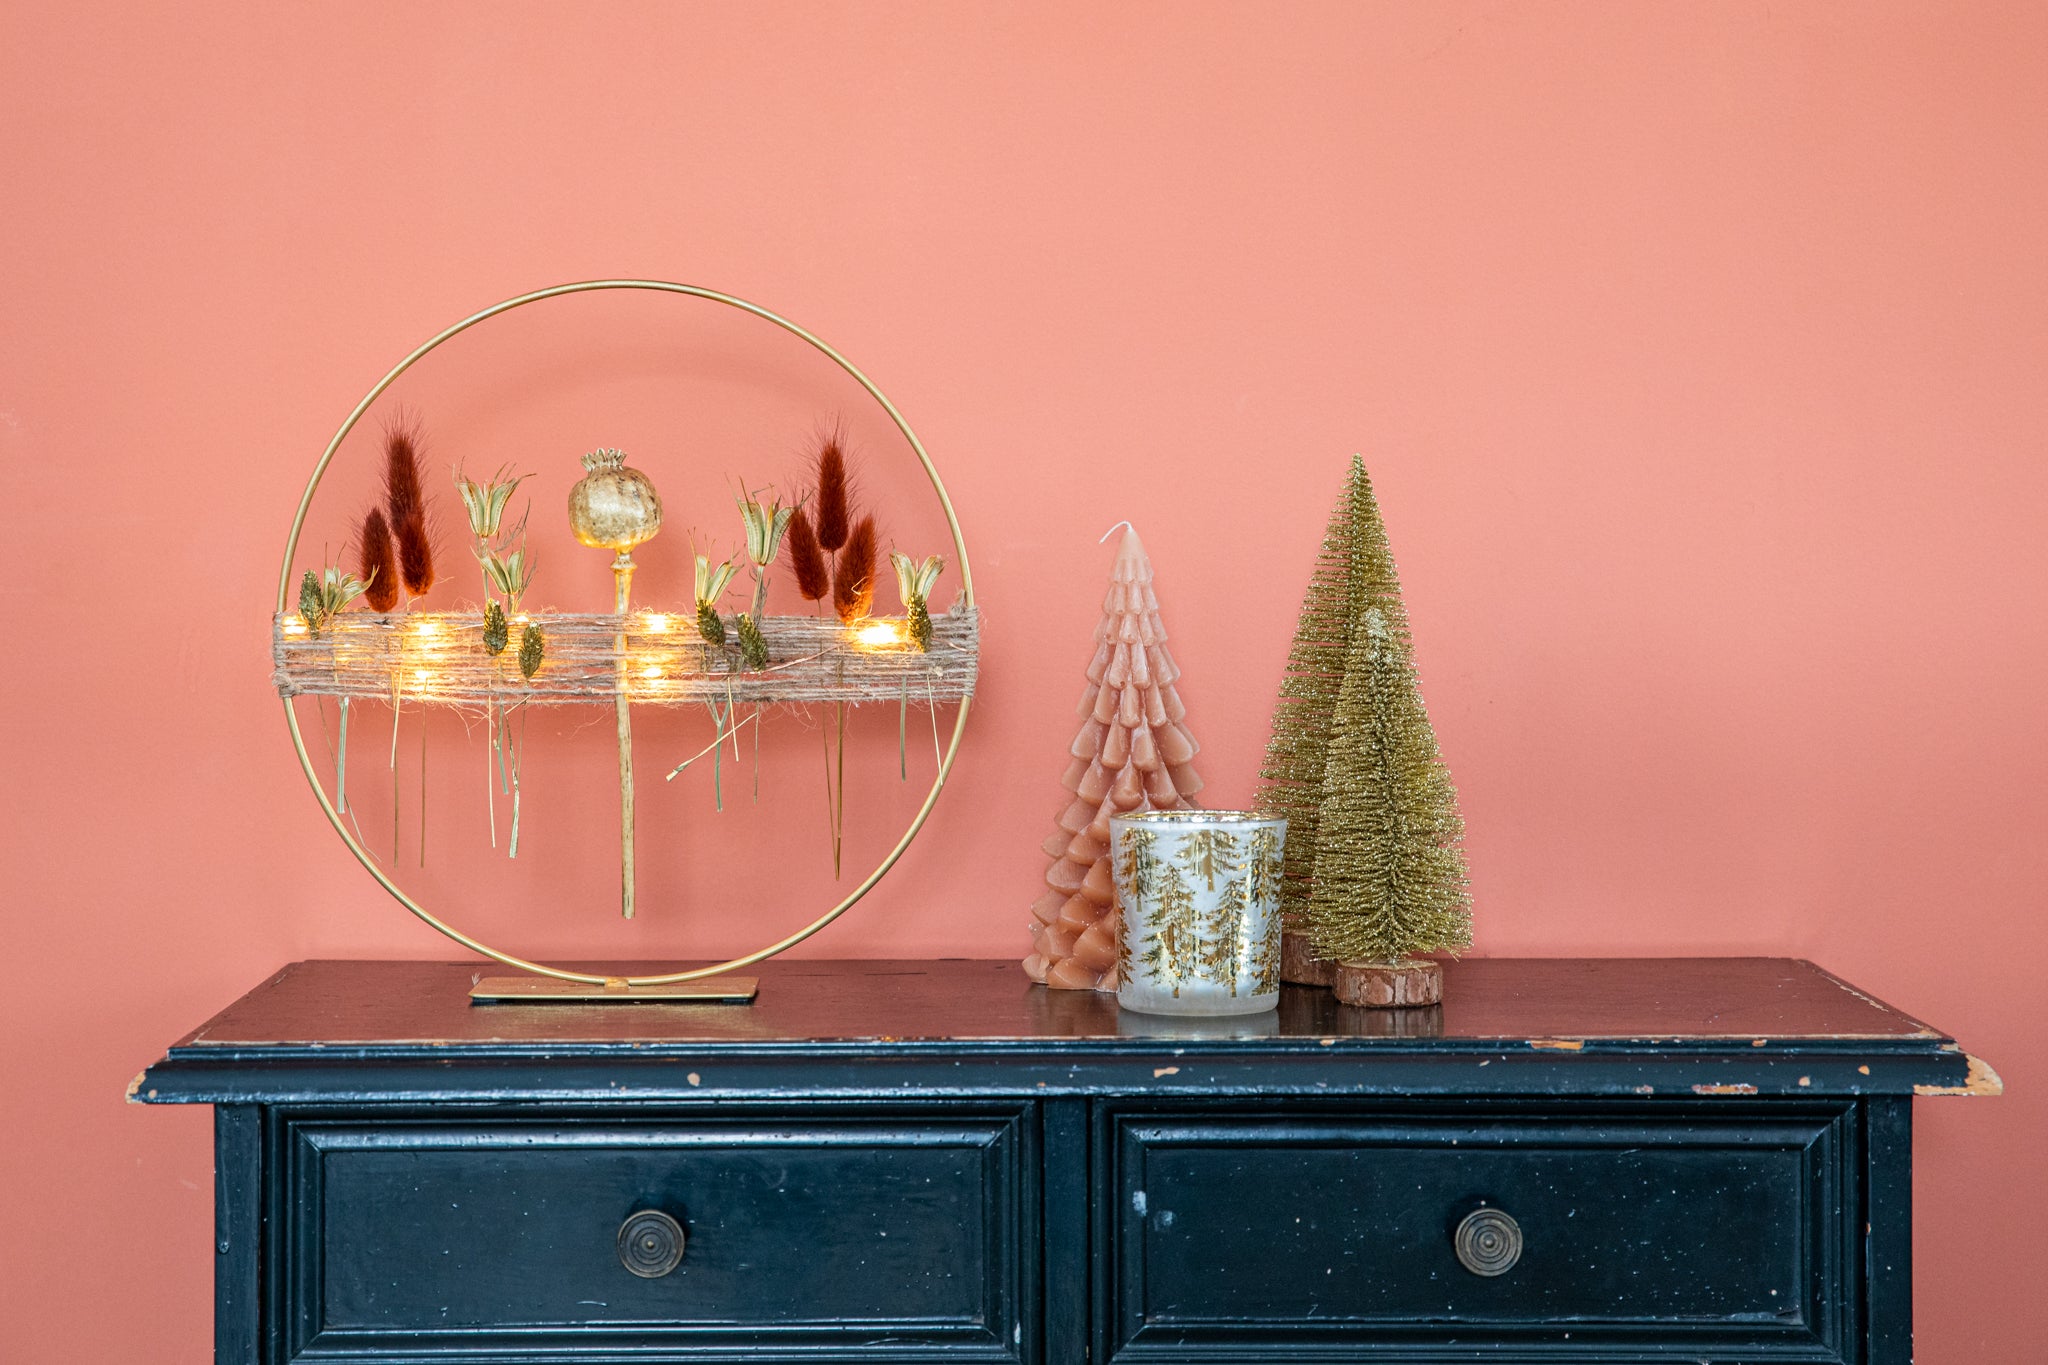 Kerst droogbloem cirkel op gouden standaard met LED verlichting kleur bruin/goud